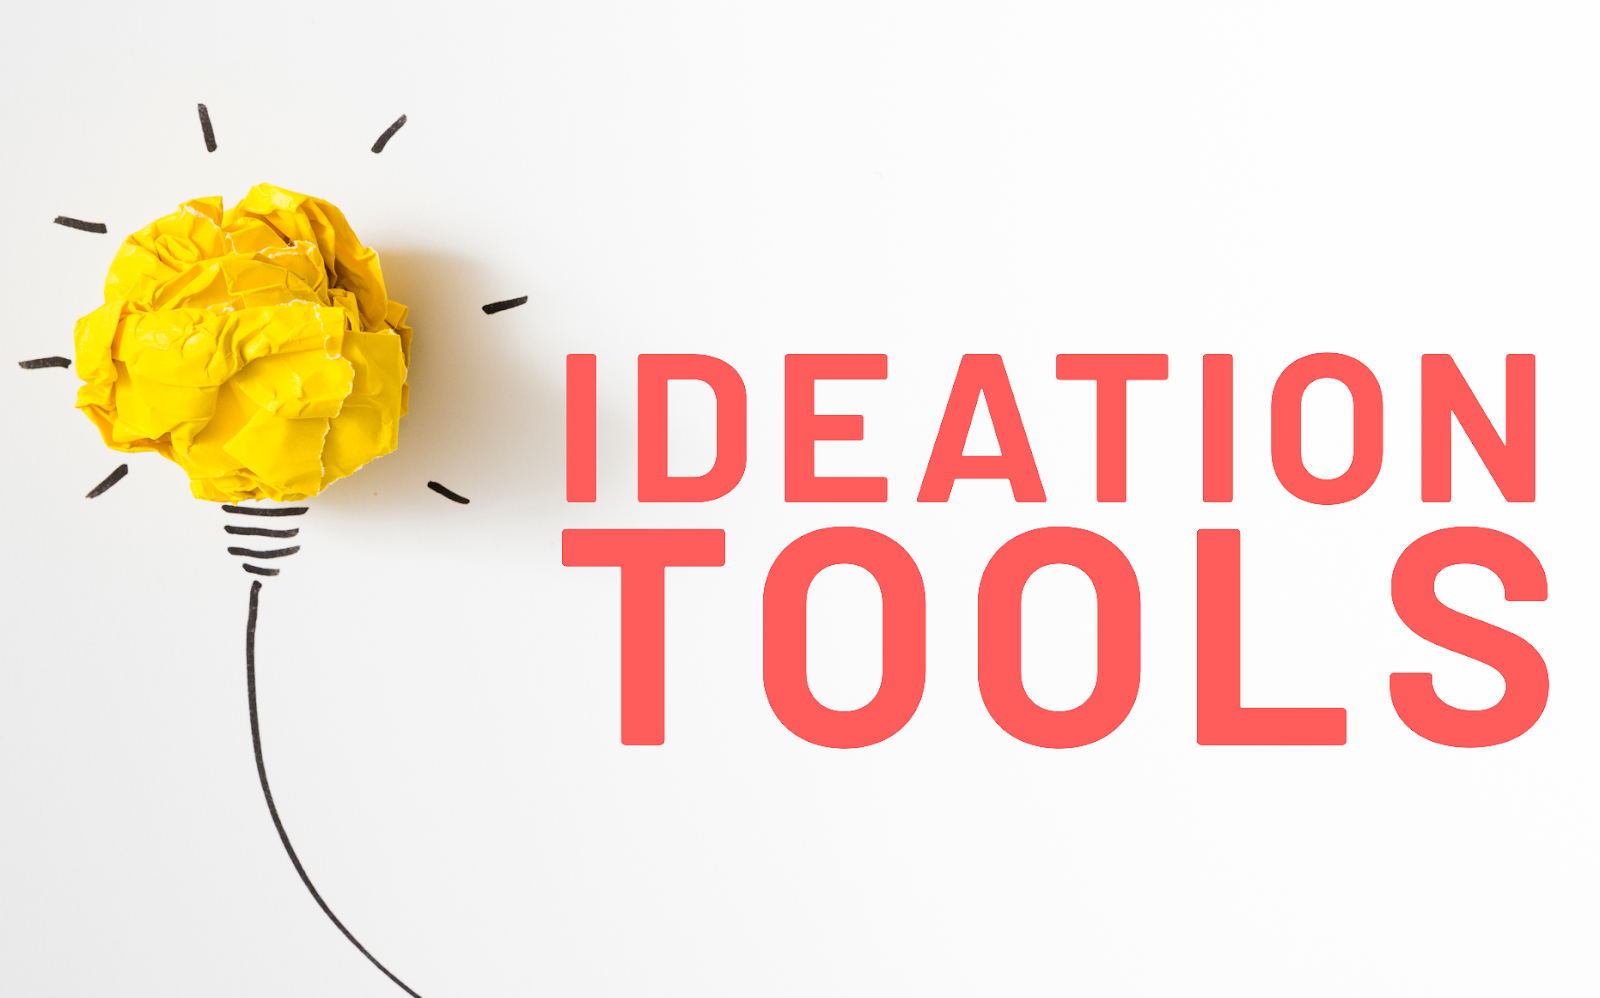 Ideation: Tools, Purpose & Methods